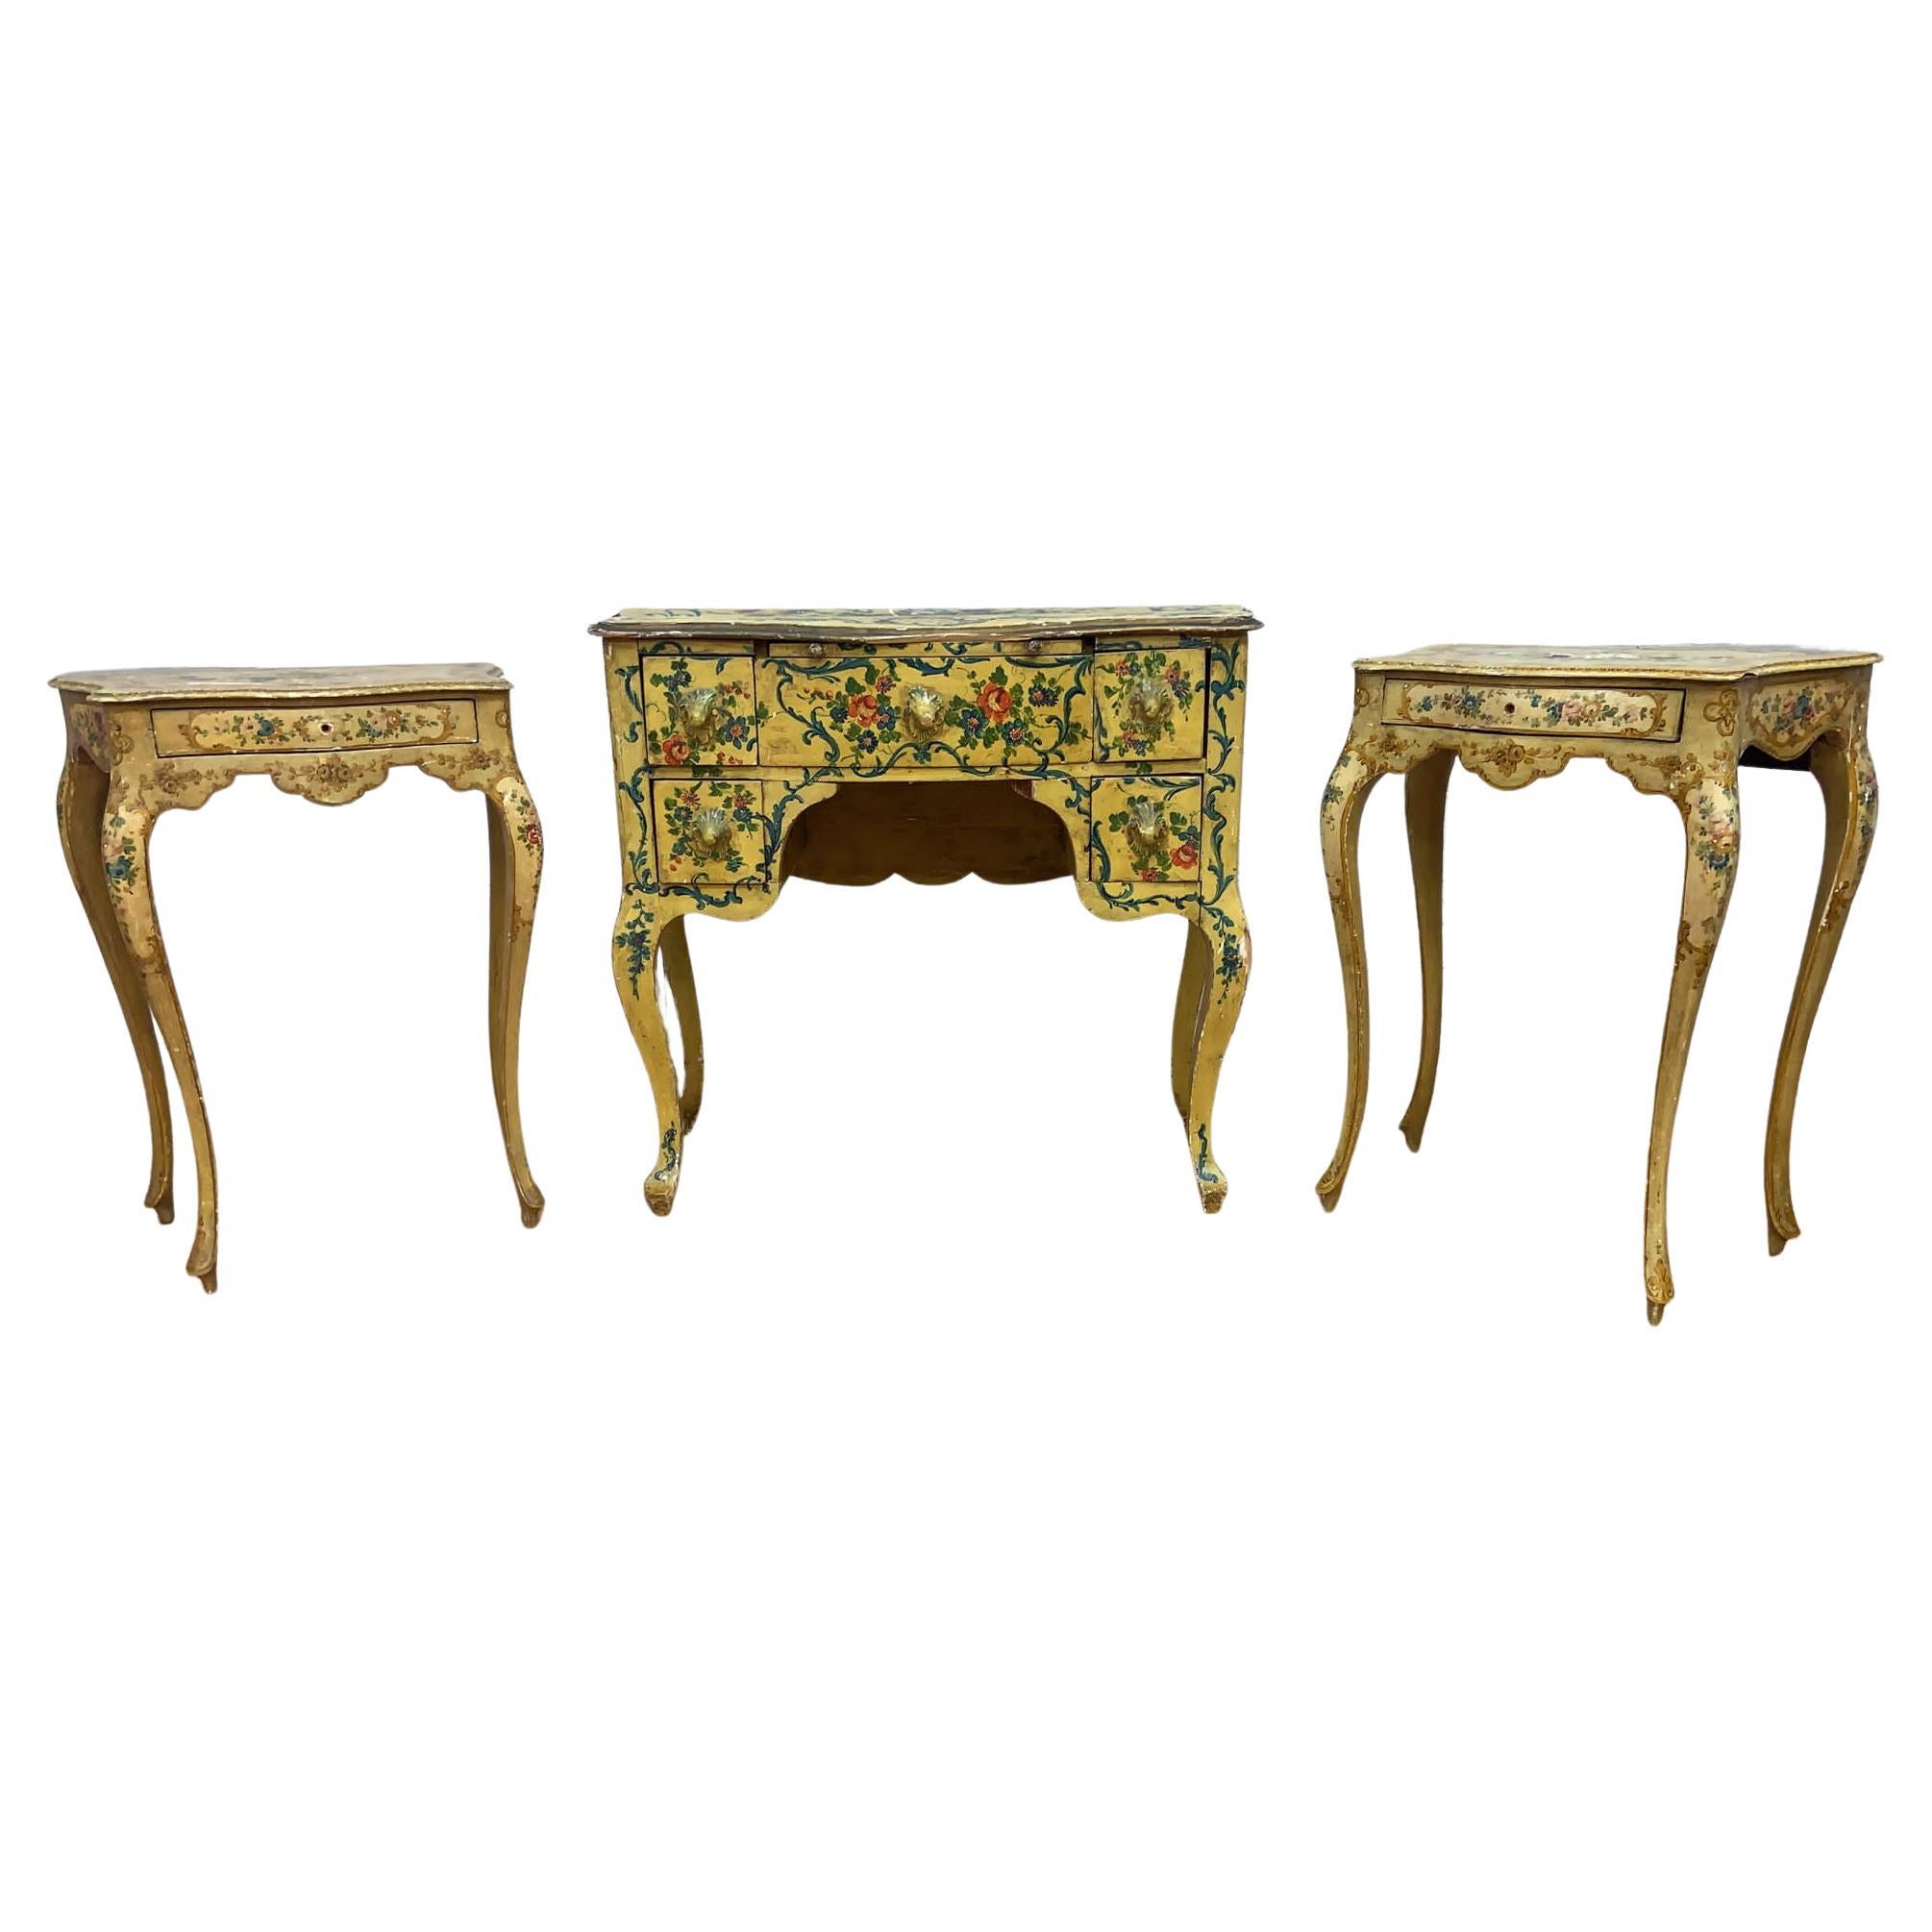 Tables de coiffeuse et tables d'appoint vénitiennes anciennes de style rococo peintes à la main - Lot de 3